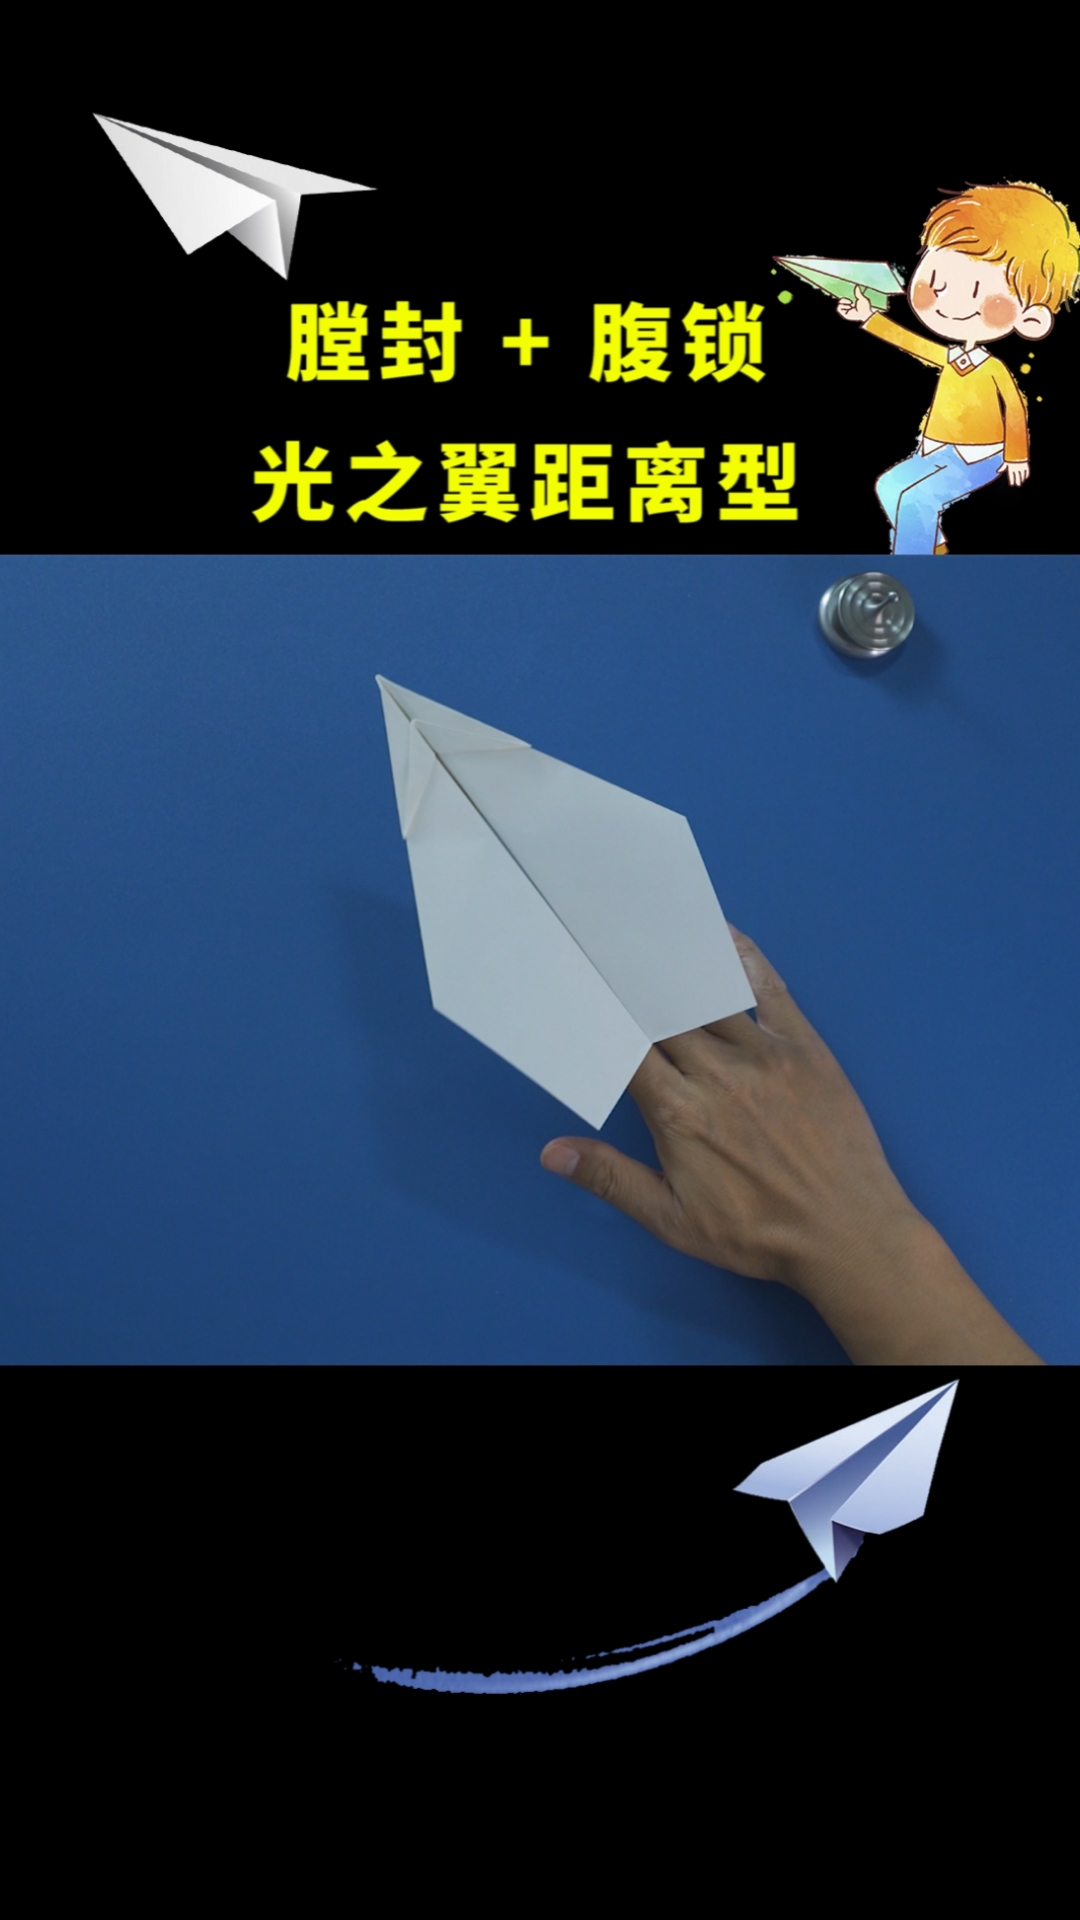 不同类型的纸飞机、不同的纸飞机怎么叠